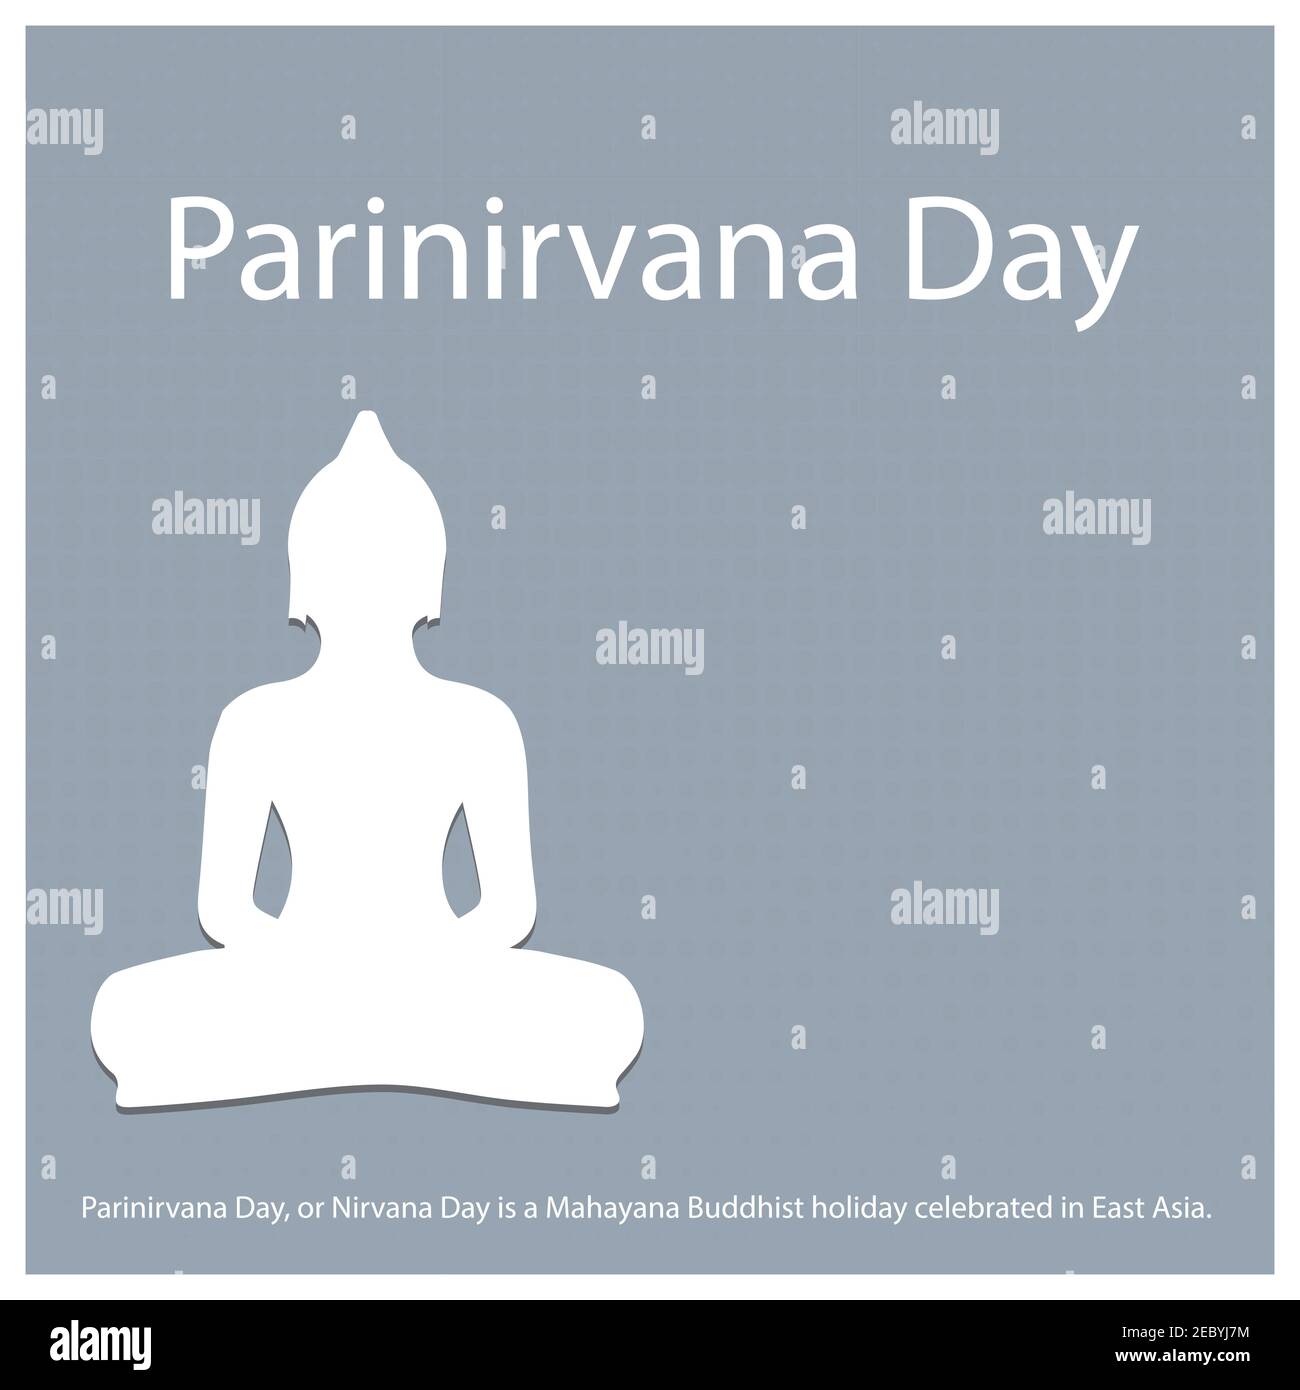 Parinirvana Day, ou Nirvana Day, est une fête bouddhiste Mahayana célébrée en Asie de l'est. Illustration de Vecteur